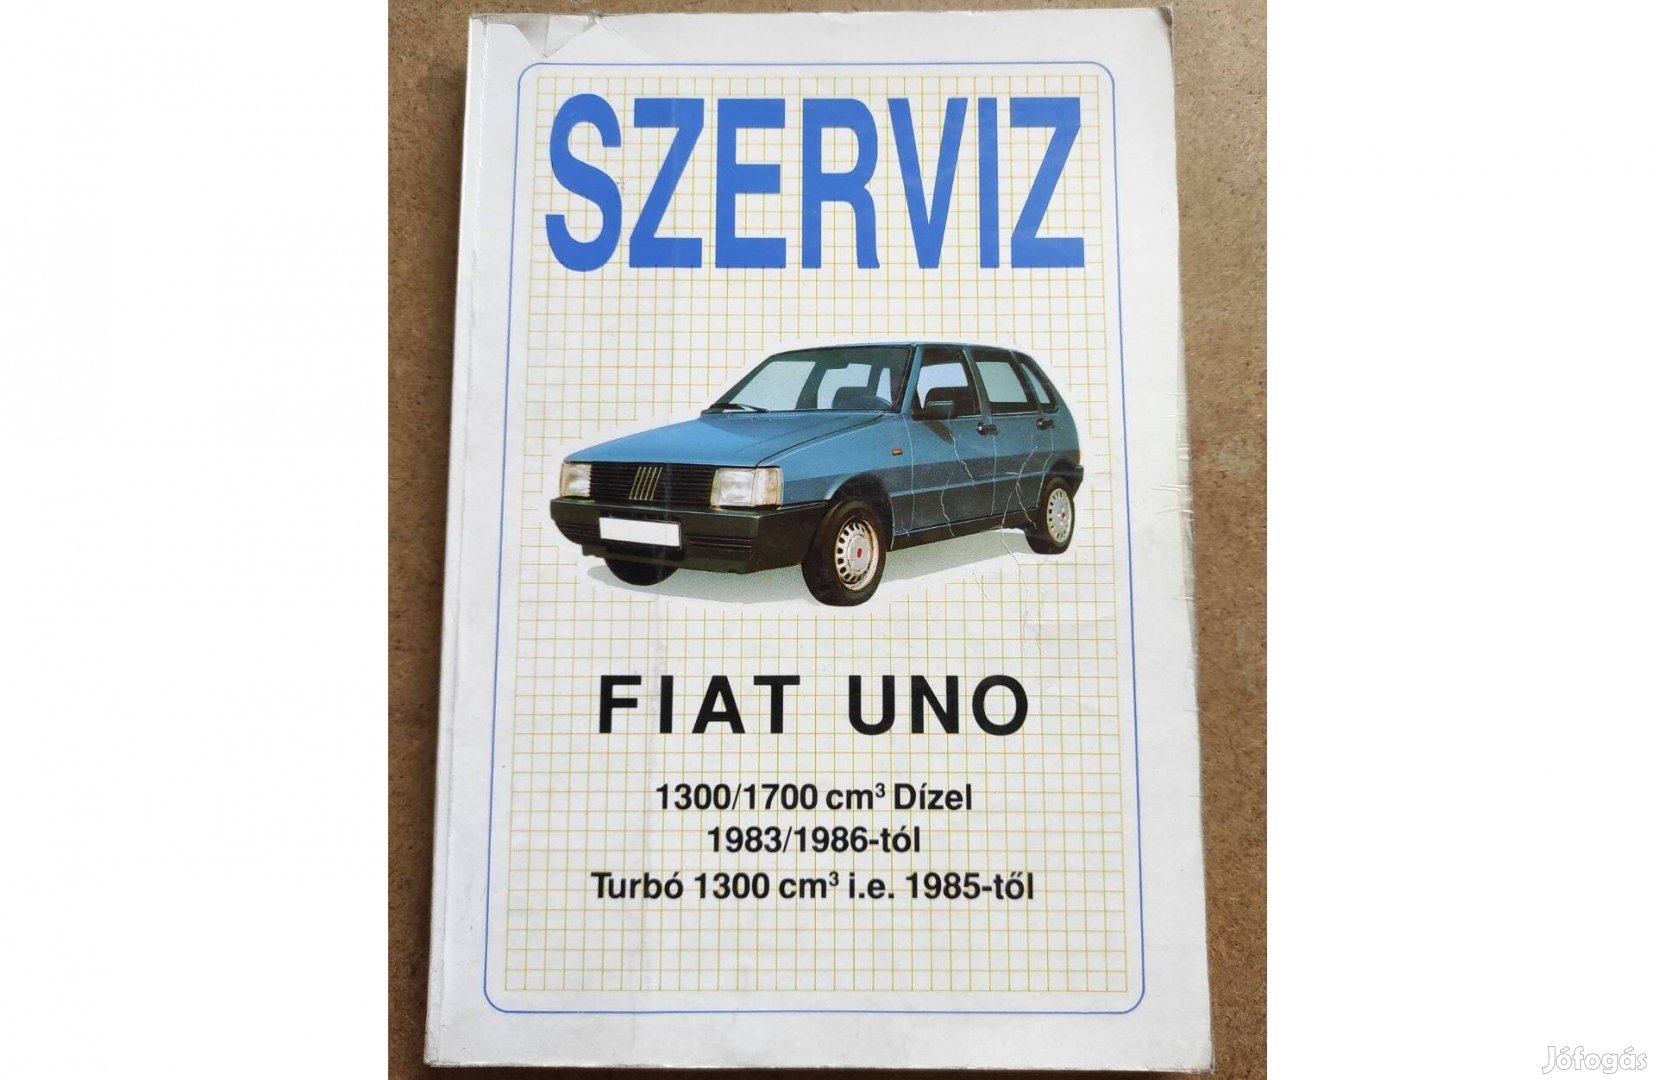 Fiat Uno javítási karbantartási könyv. Szerviz